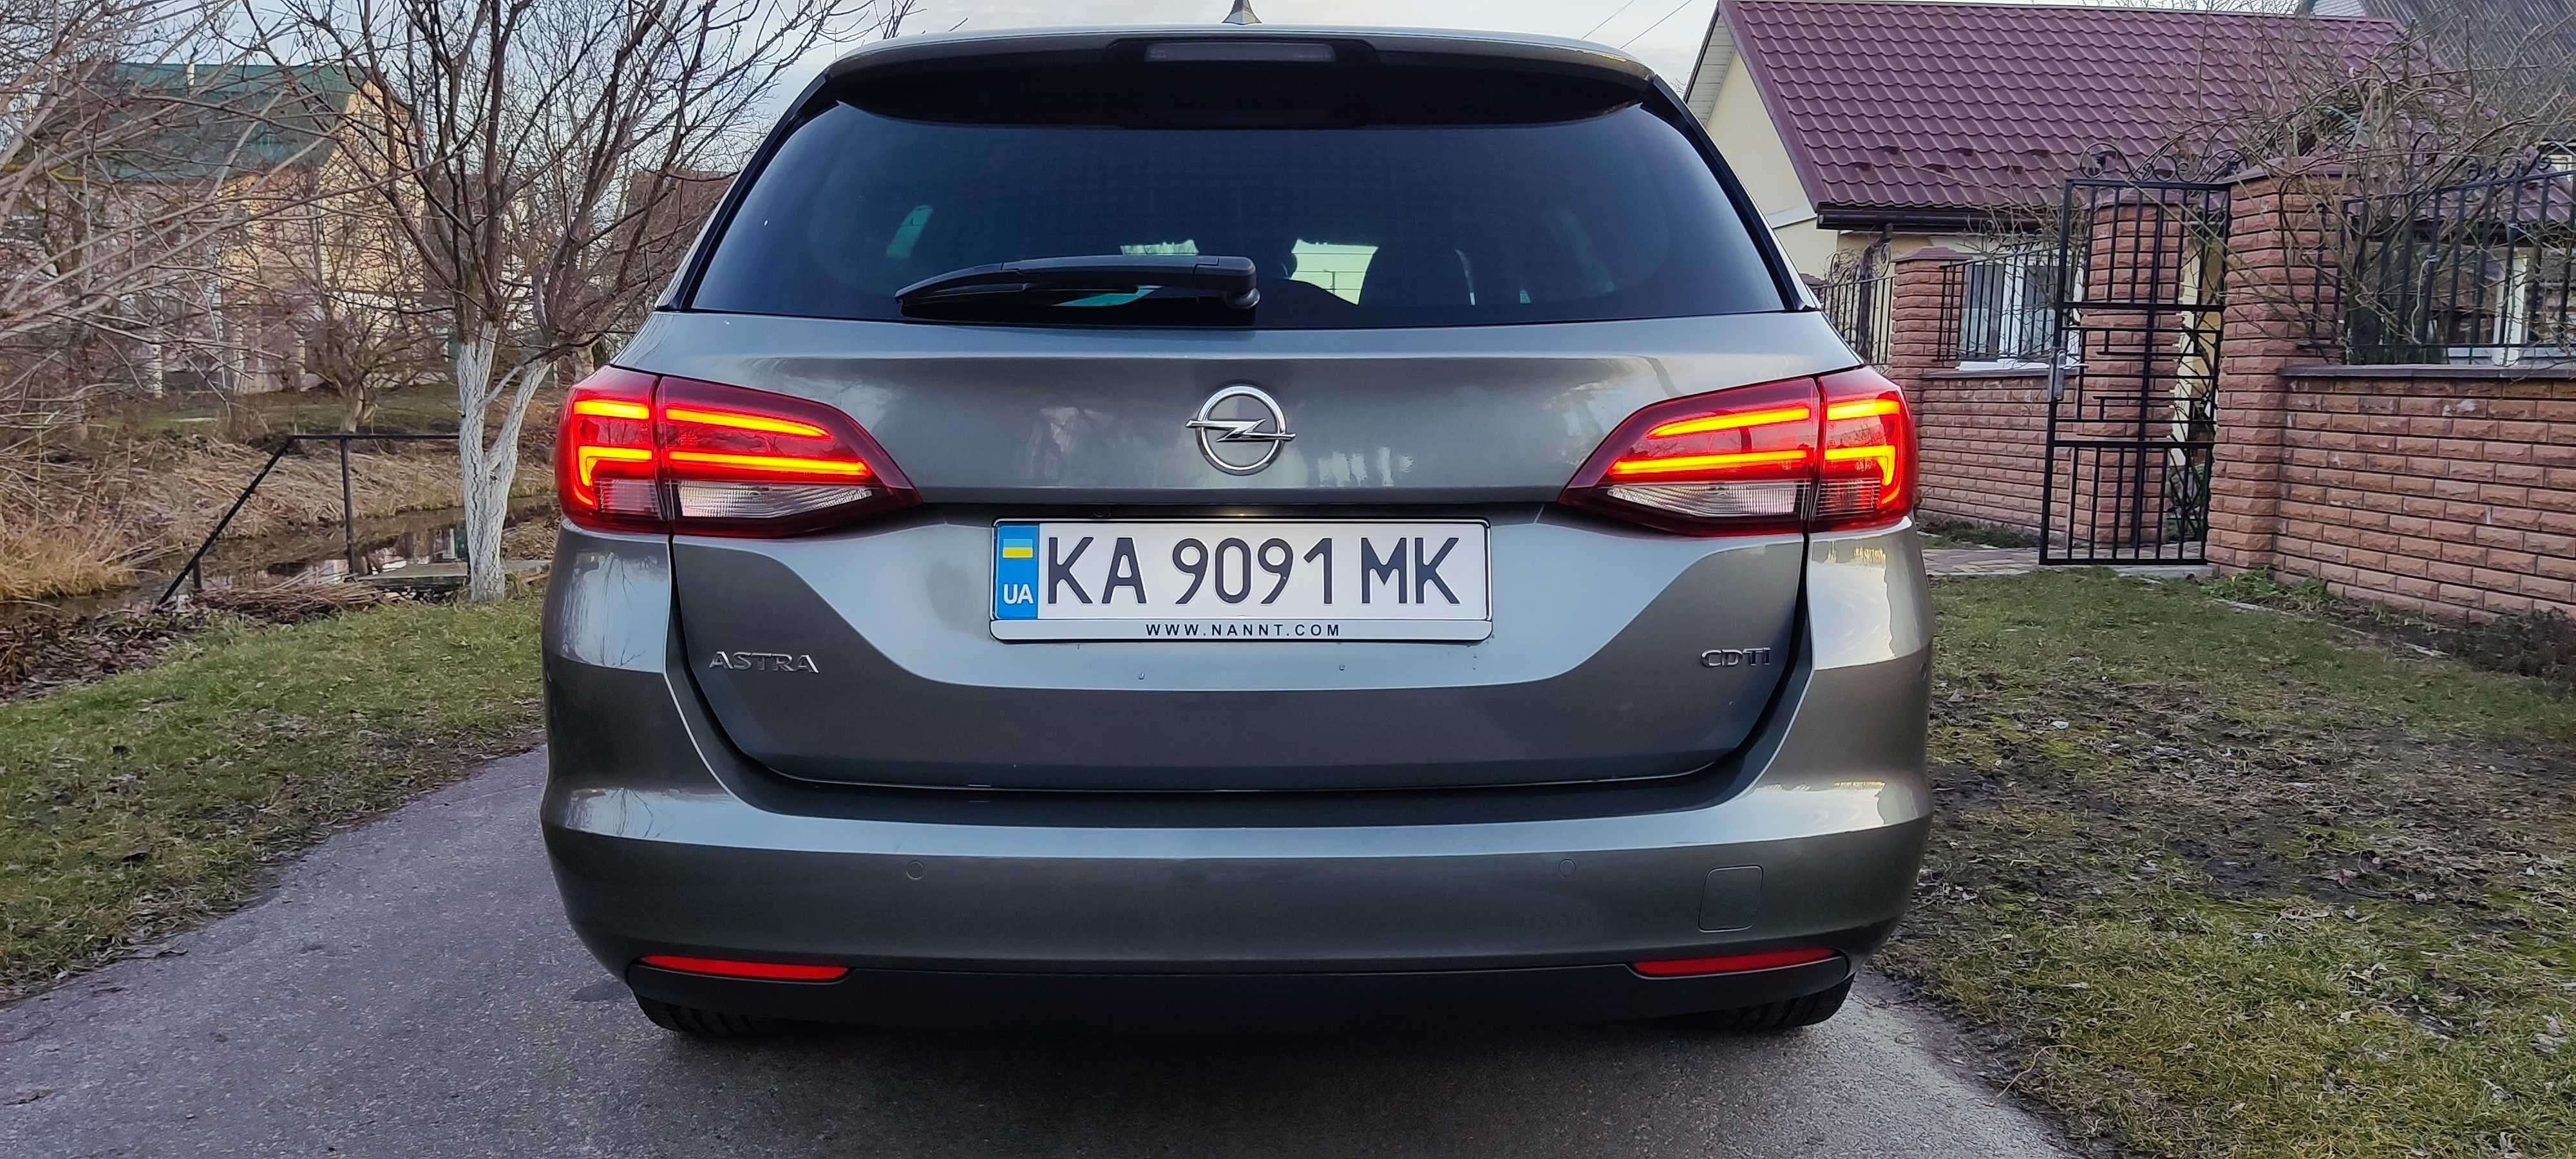 Продам авто Opel-Astra K 2018 p. Cosmo